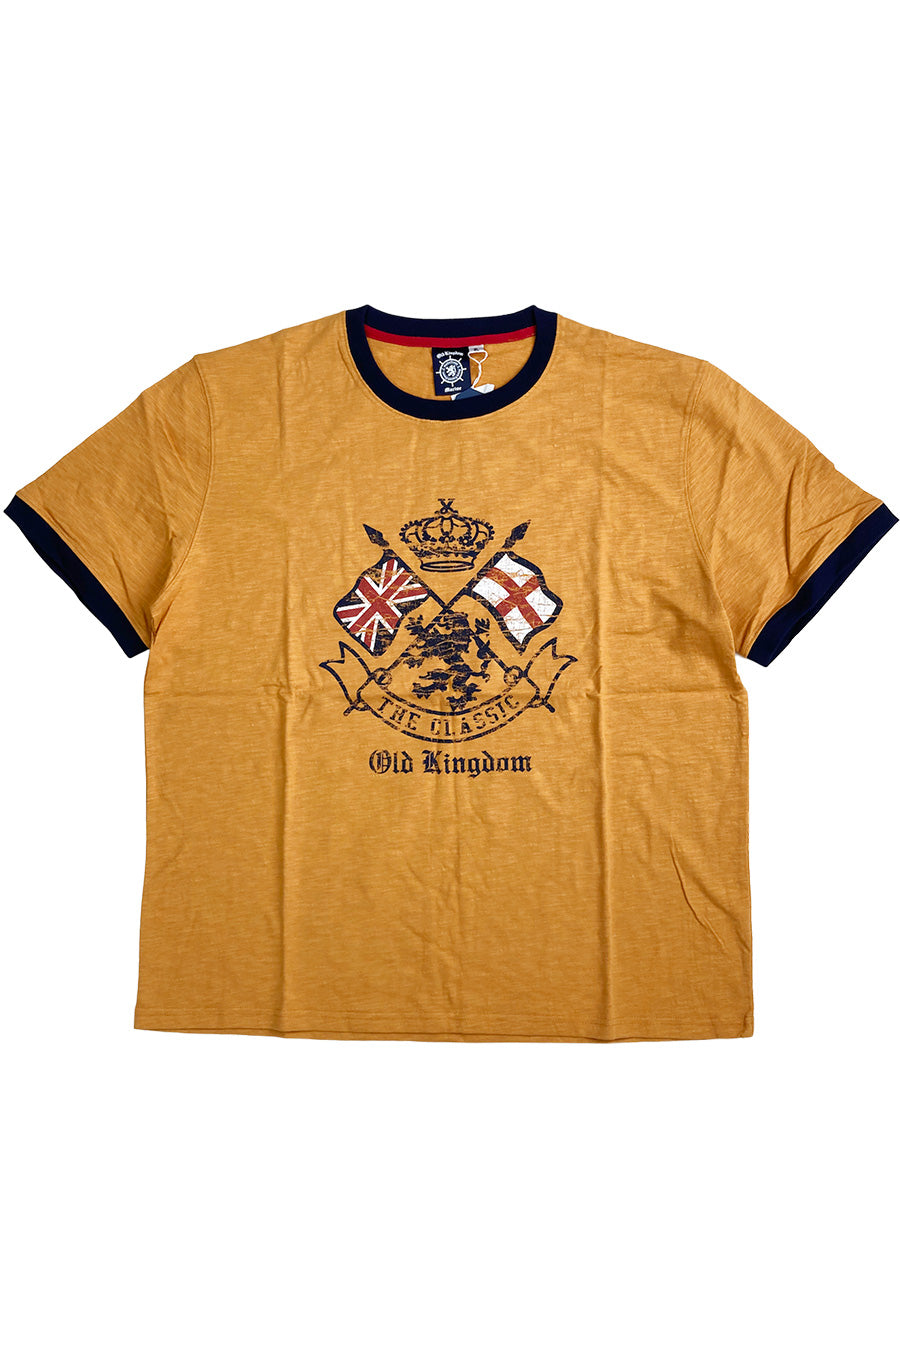 【セール】【OUTLET】KING SIZE キングサイズ BIG SIZE ビッグサイズ スラブ天竺リンガーTシャツ 大きいサイズ ゆったり 2L 3L 4L 5L 6L アメカジ カジュアル